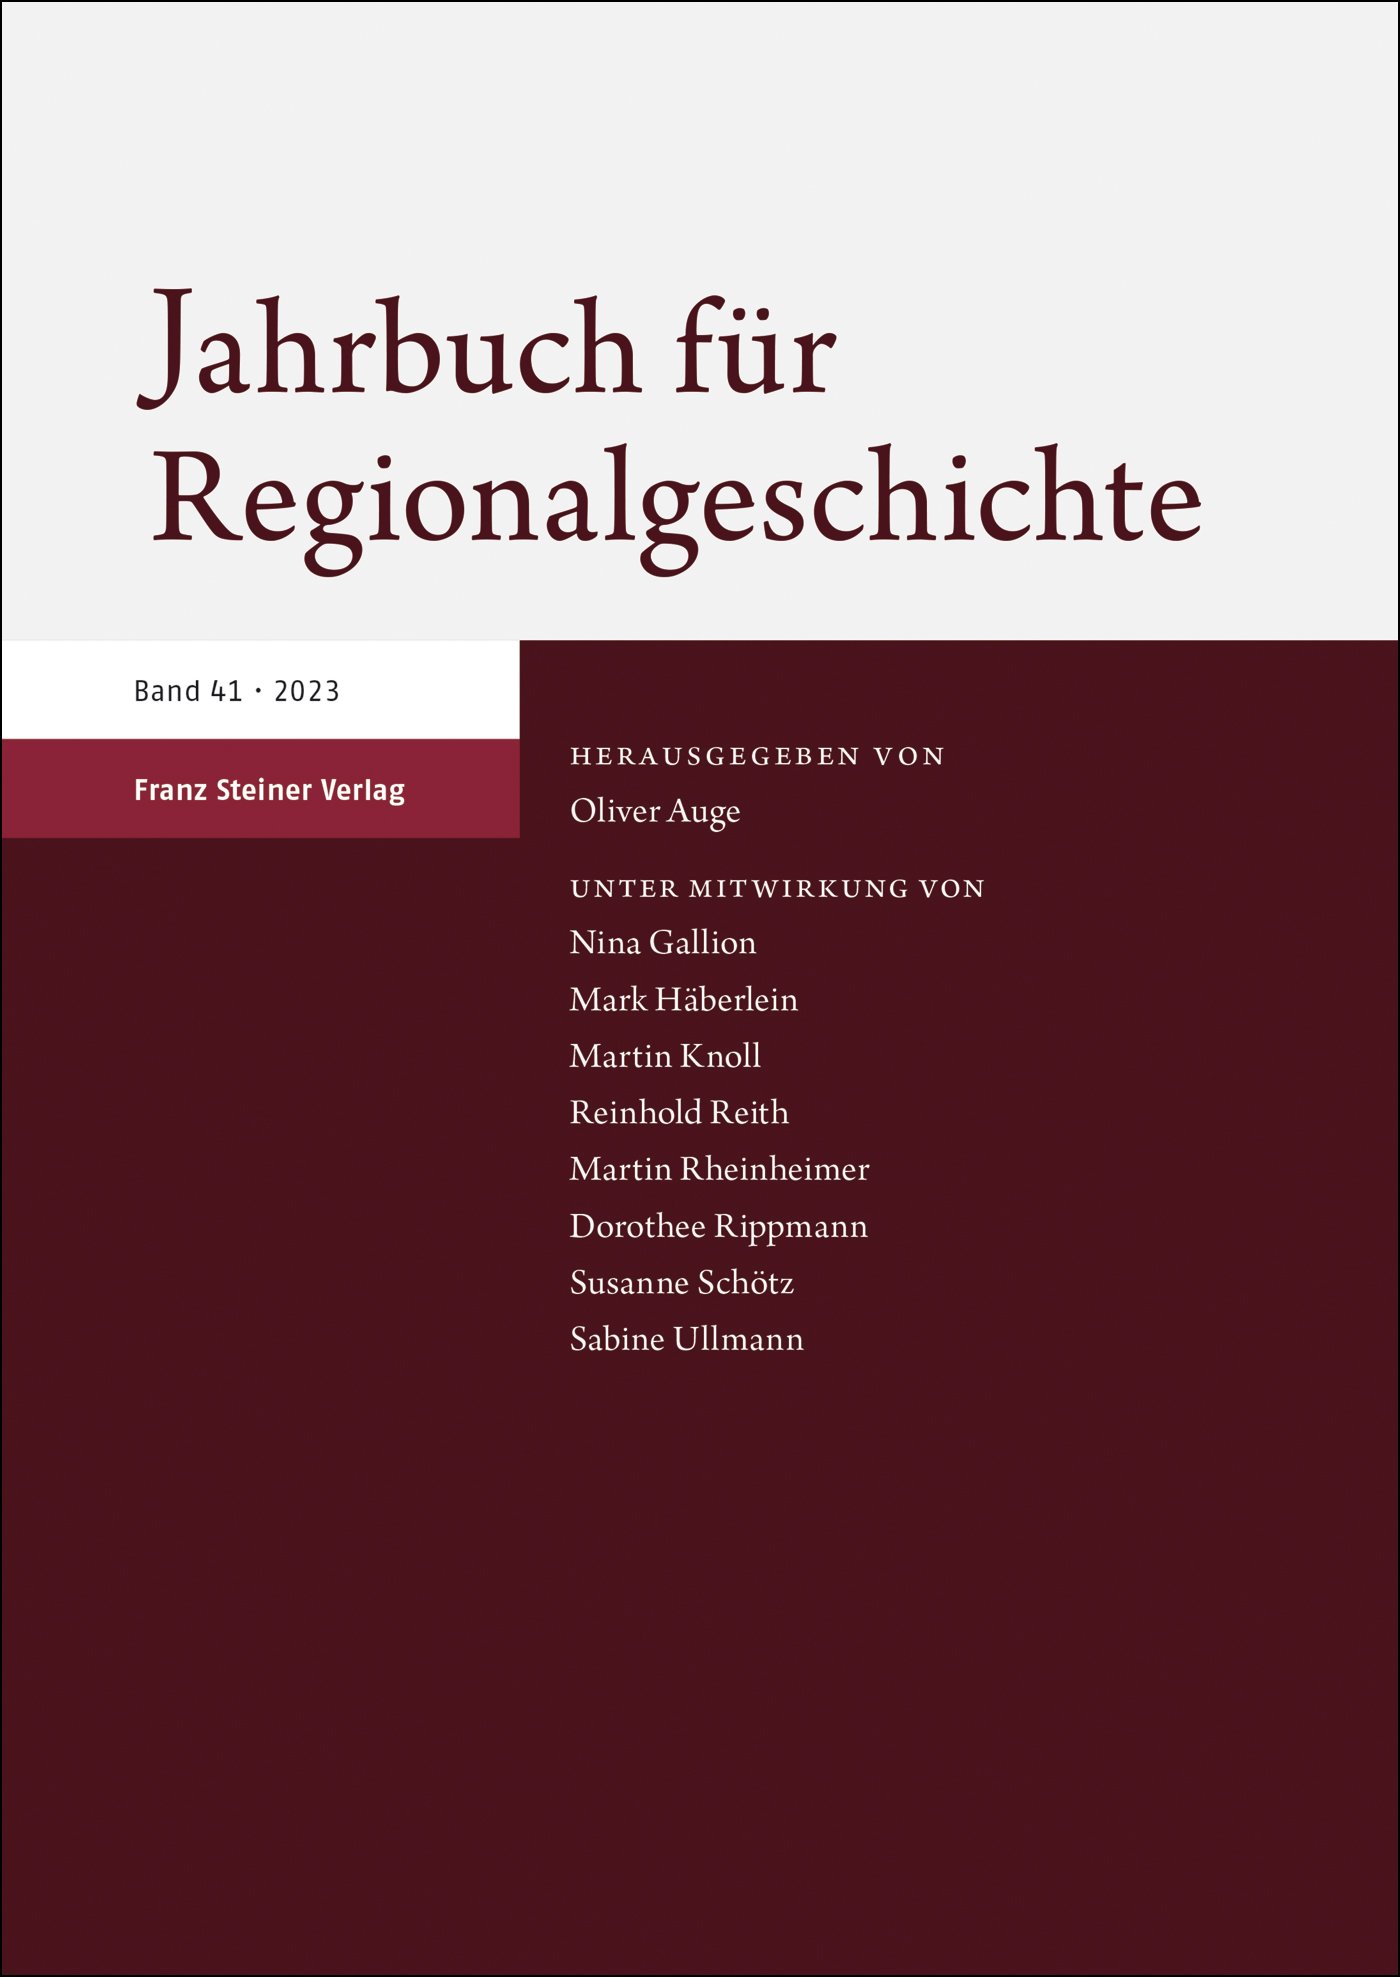 Jahrbuch für Regionalgeschichte 41 (2023)